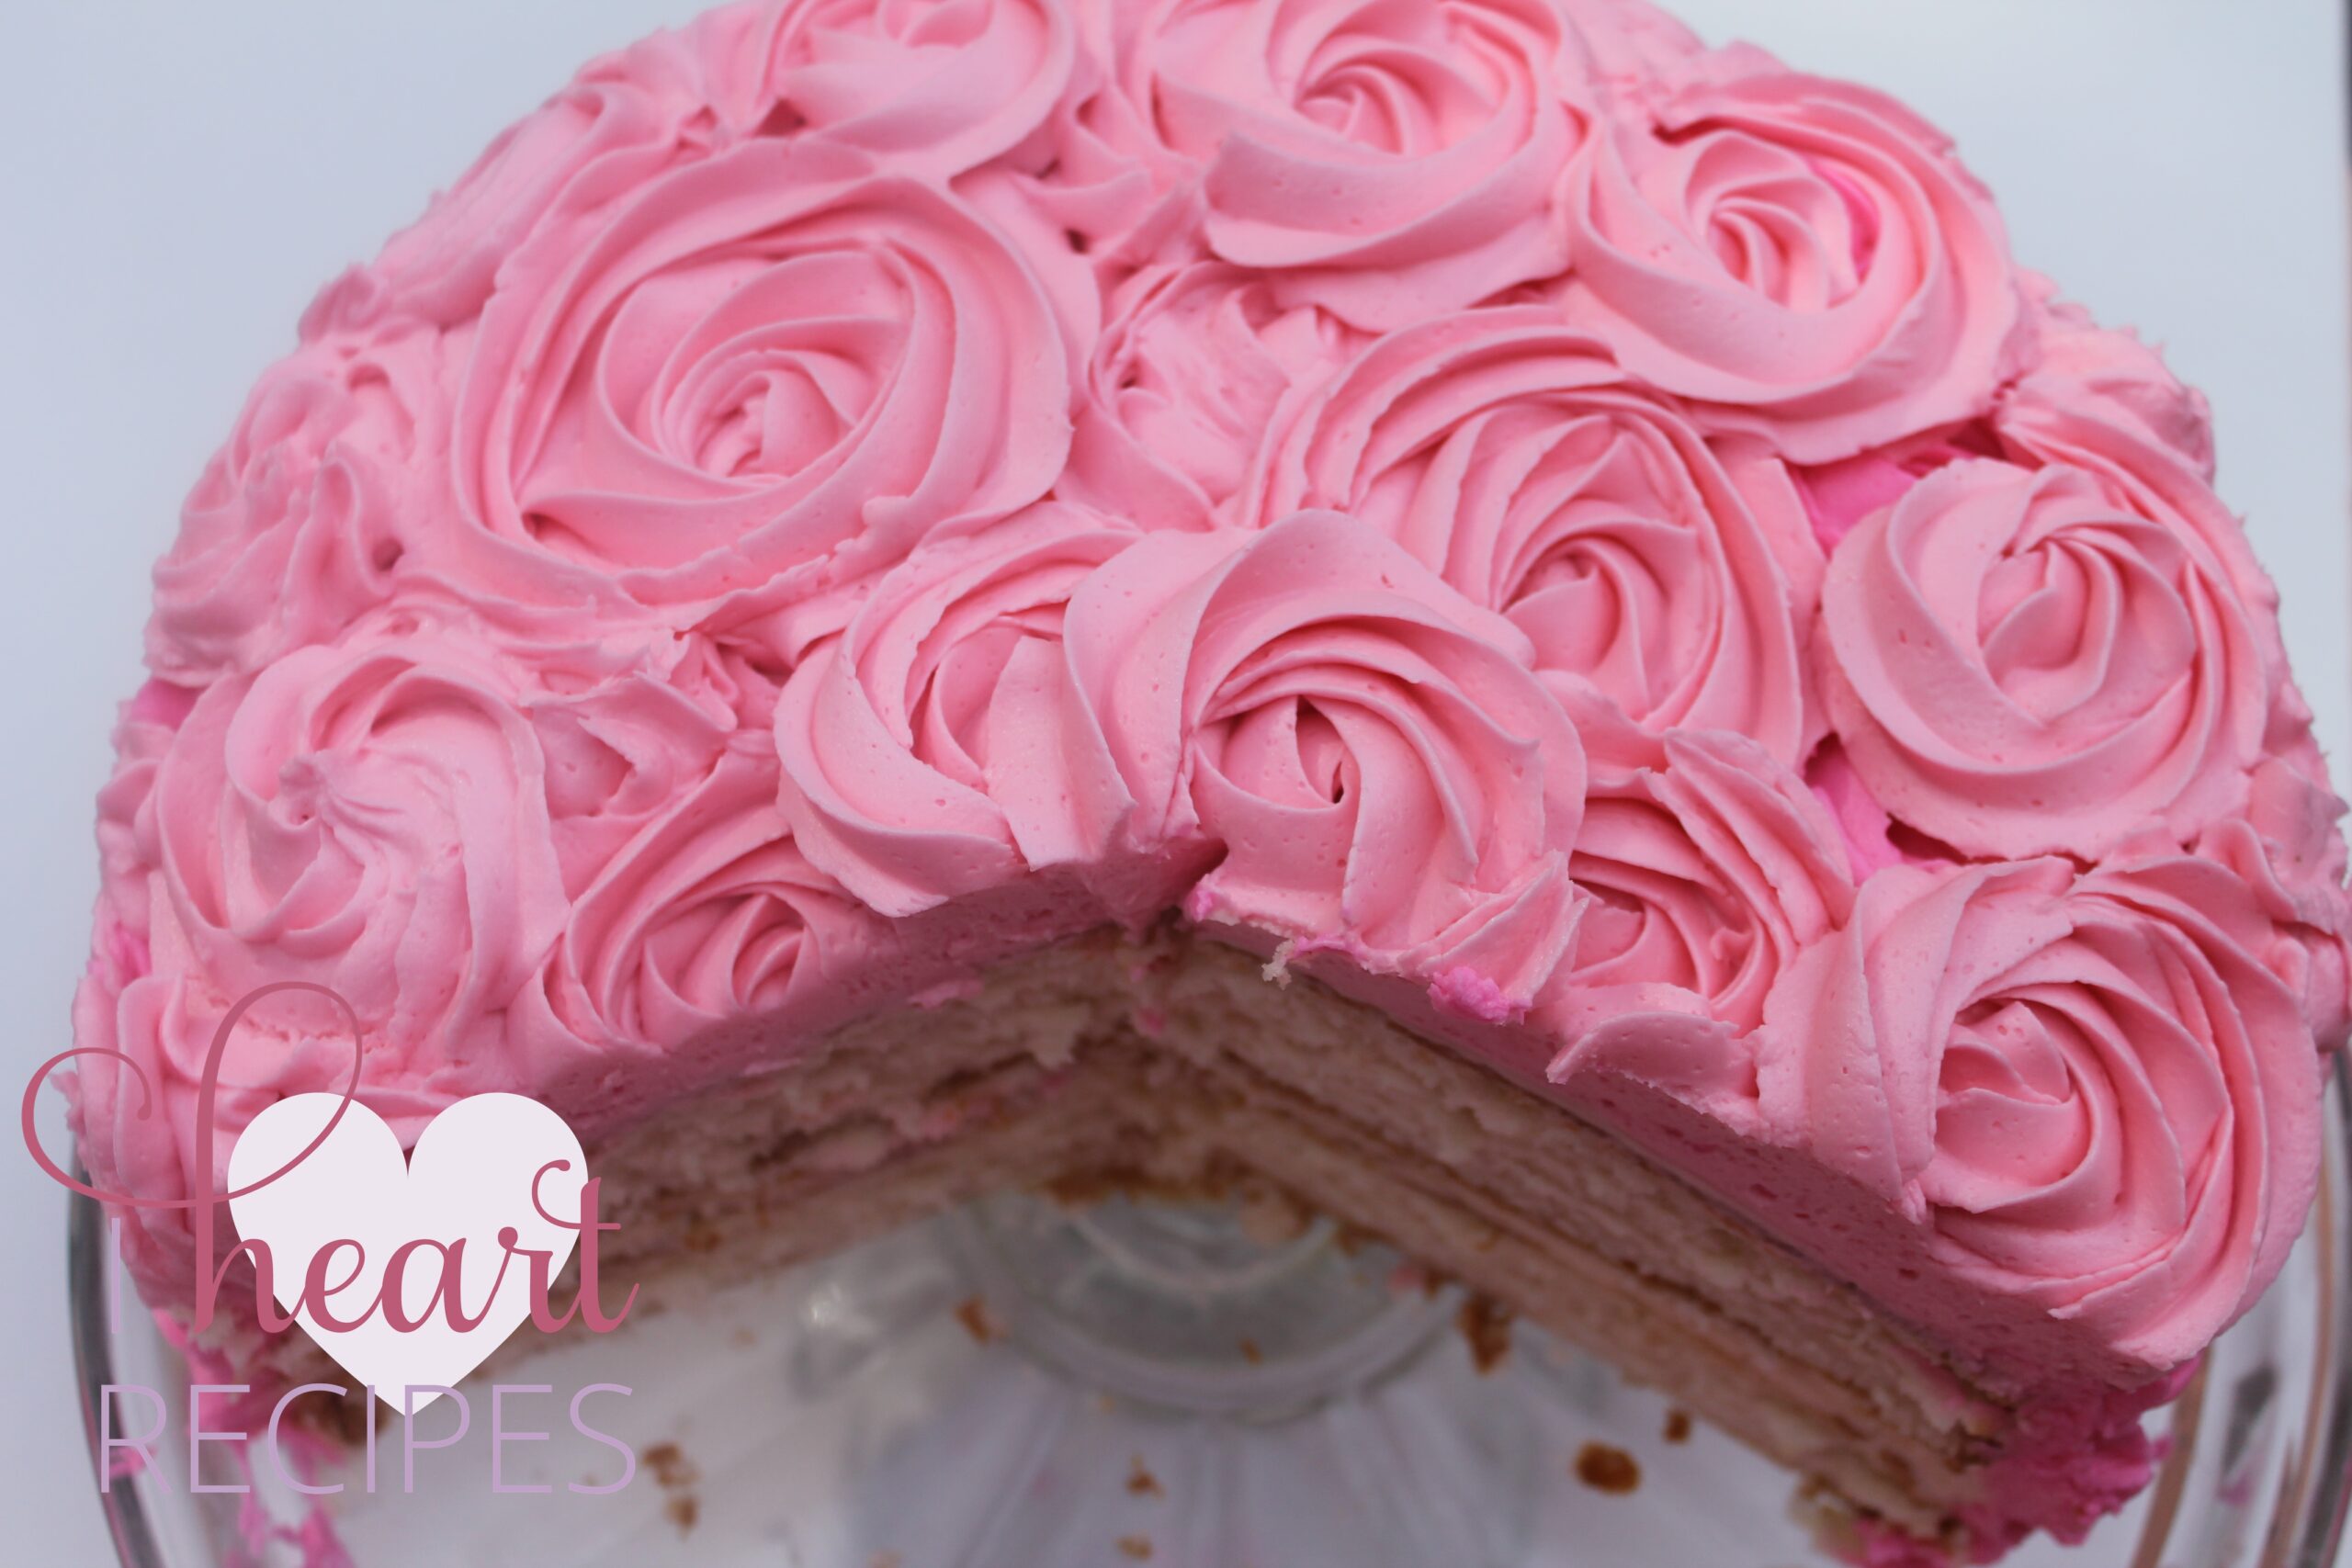 Rose Tres Leches Cake - Rose Milk Cake - Tiffin And Tea